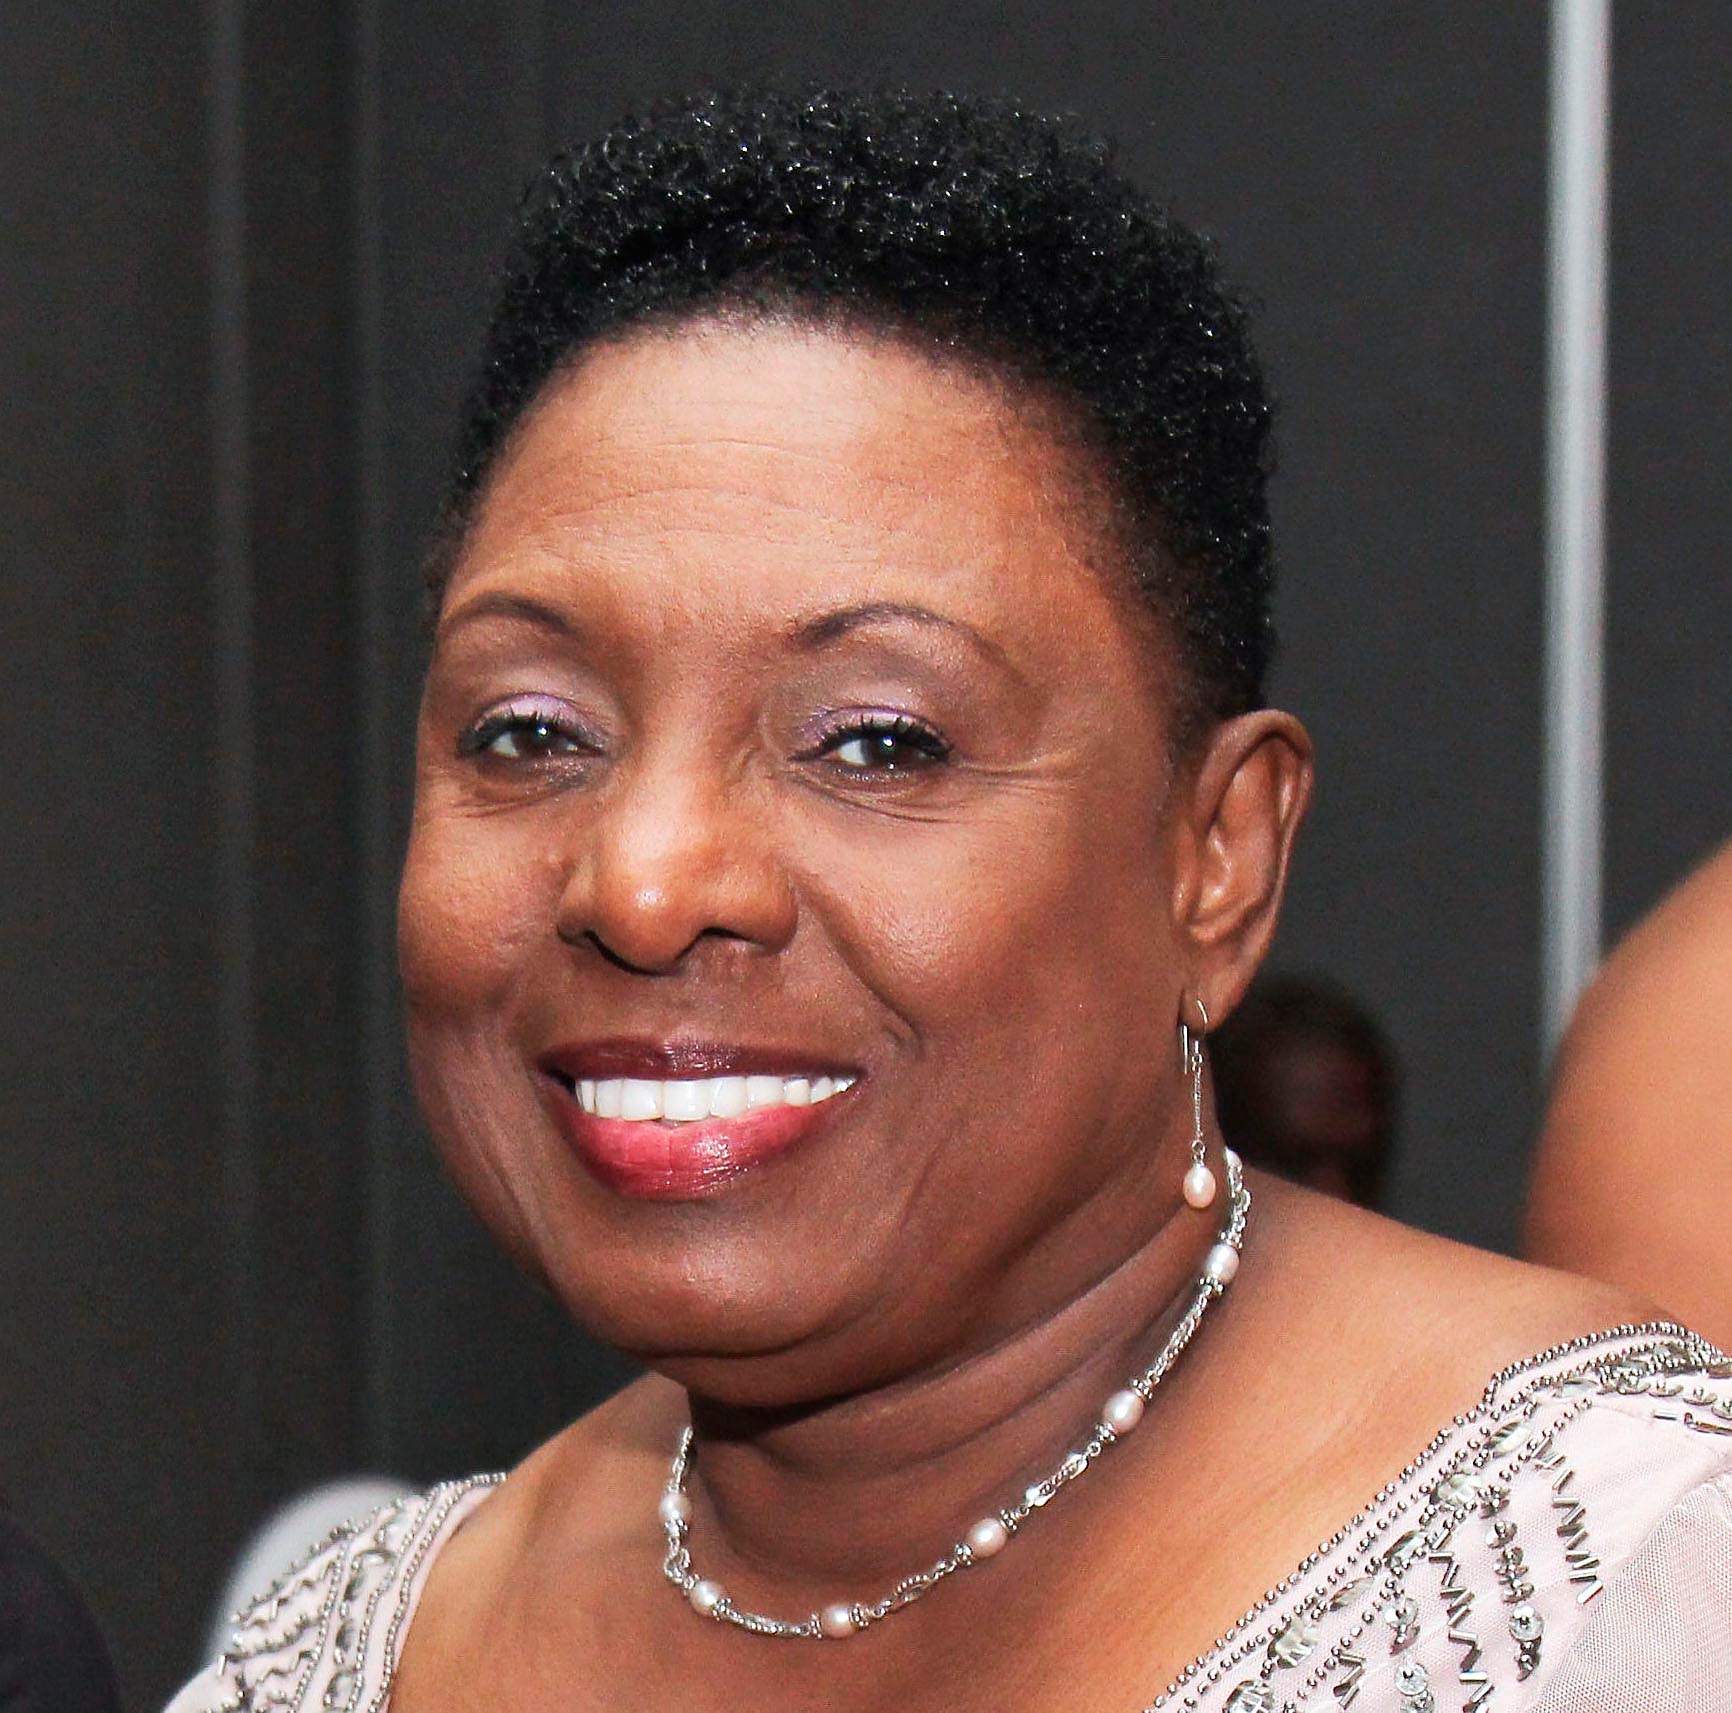 IRAWMA, has Minister Olivia Grange Blessings